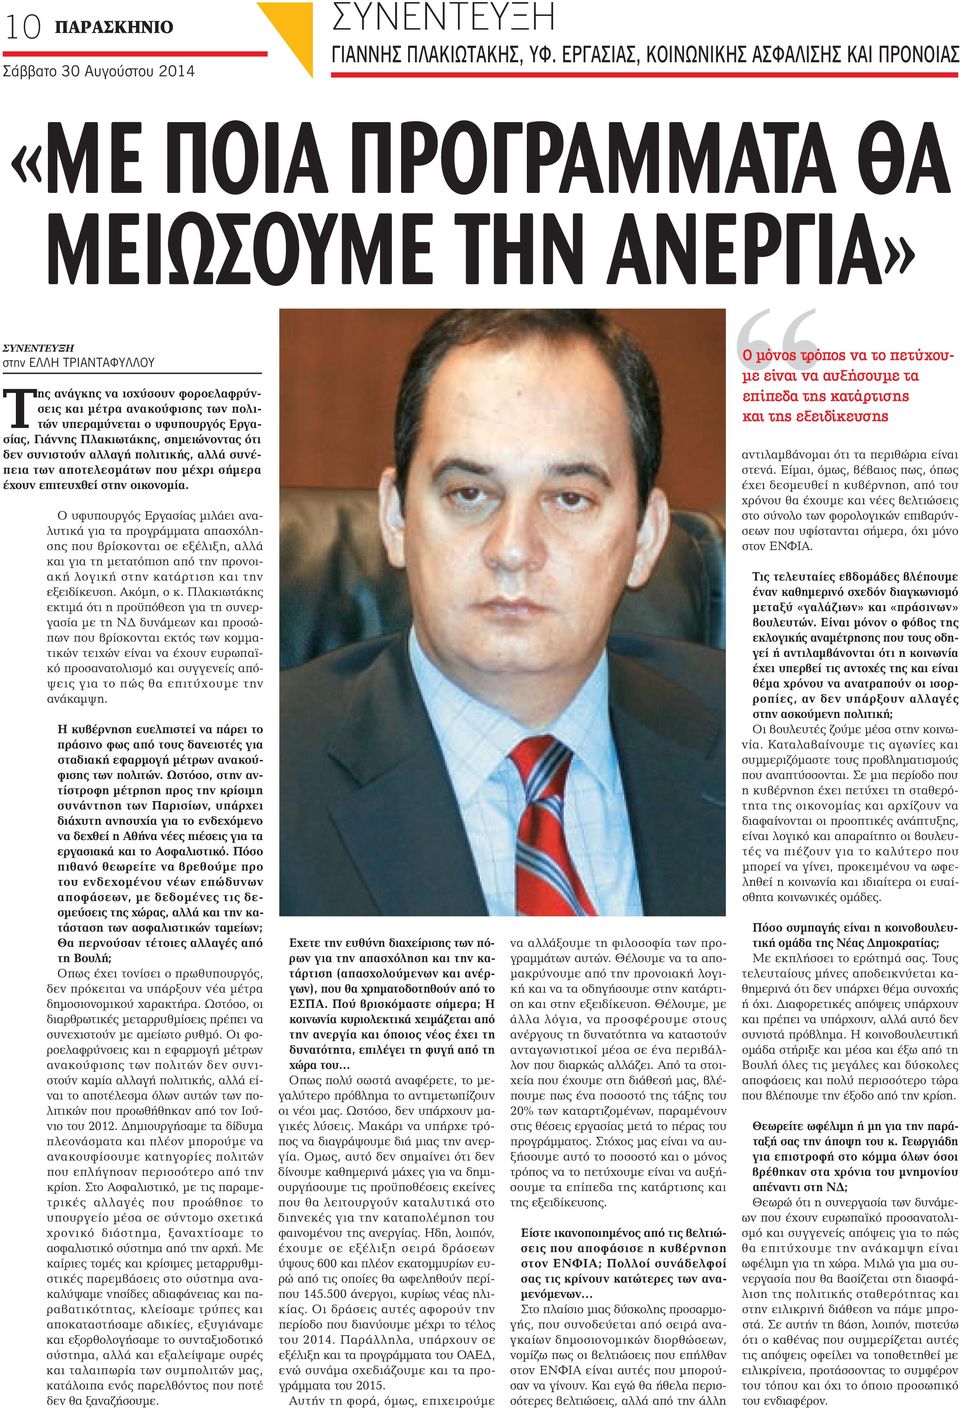 υπεραμύνεται ο υφυπουργός Εργασίας, Γιάννης Πλακιωτάκης, σημειώνοντας ότι δεν συνιστούν αλλαγή πολιτικής, αλλά συνέπεια των αποτελεσμάτων που μέχρι σήμερα έχουν επιτευχθεί στην οικονομία.